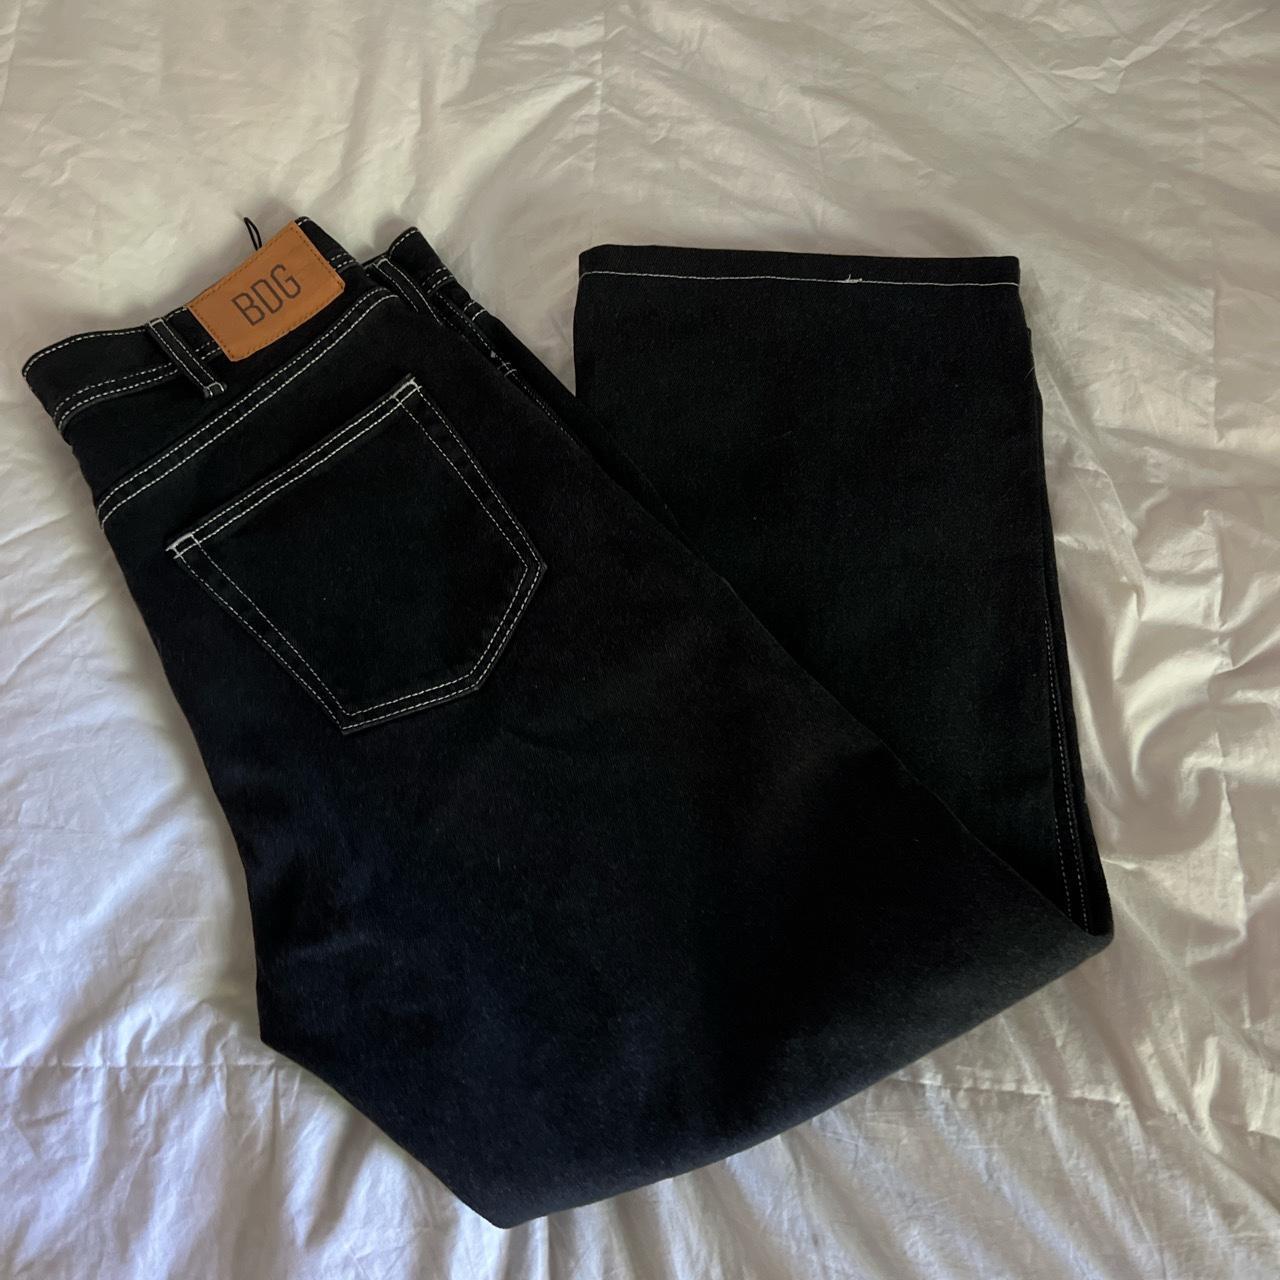 Baggy Fit black BDG jeans 32W 29L ON HOLD - Depop